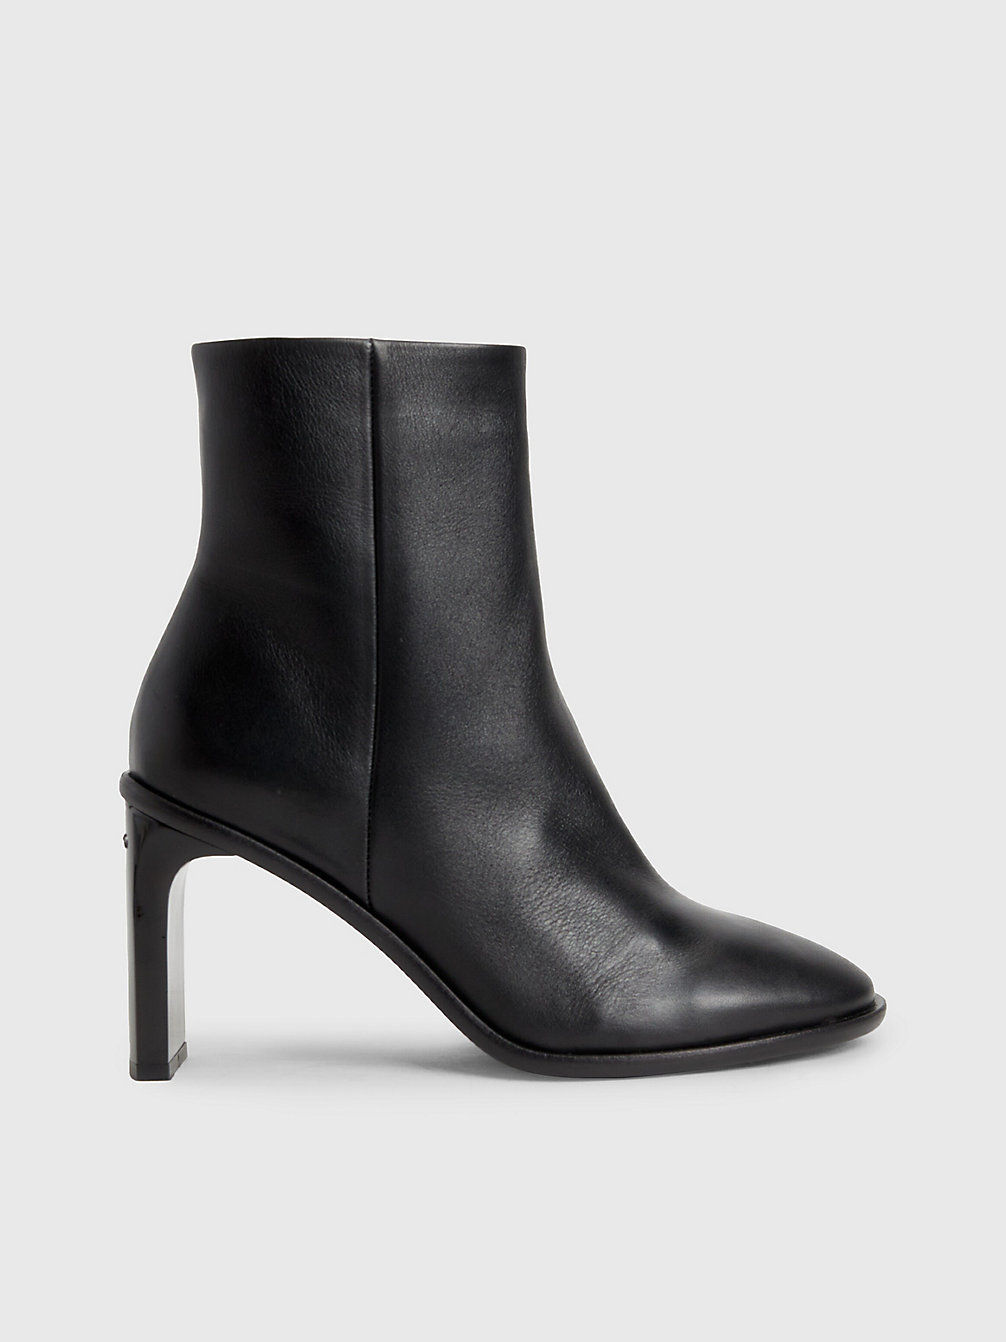 CK BLACK > Ankle-Boots Mit Absatz Aus Leder > undefined Damen - Calvin Klein